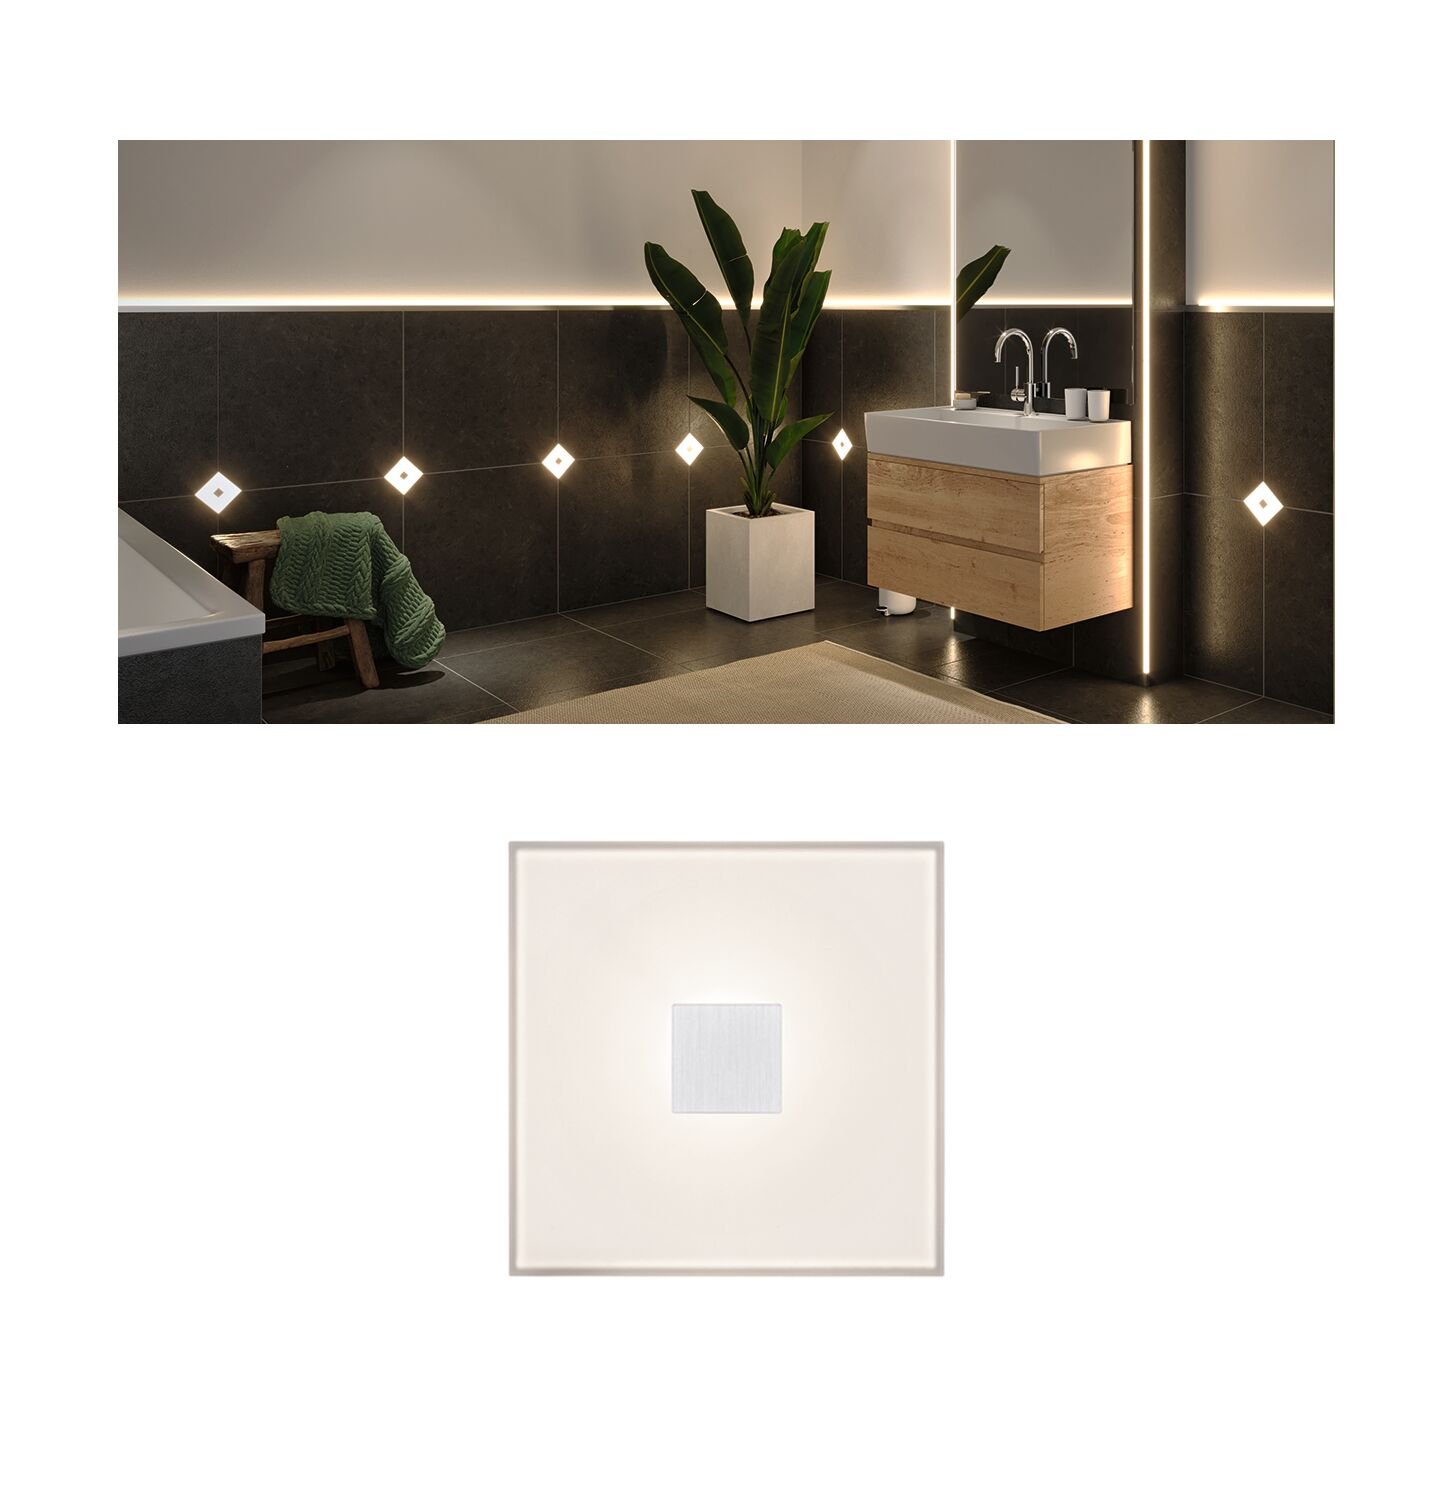 LumiTiles LED Tiles Square Single tile IP44 100x10mm 20lm 12V 0,8W dimmable 2700K White Plastic/Aluminium